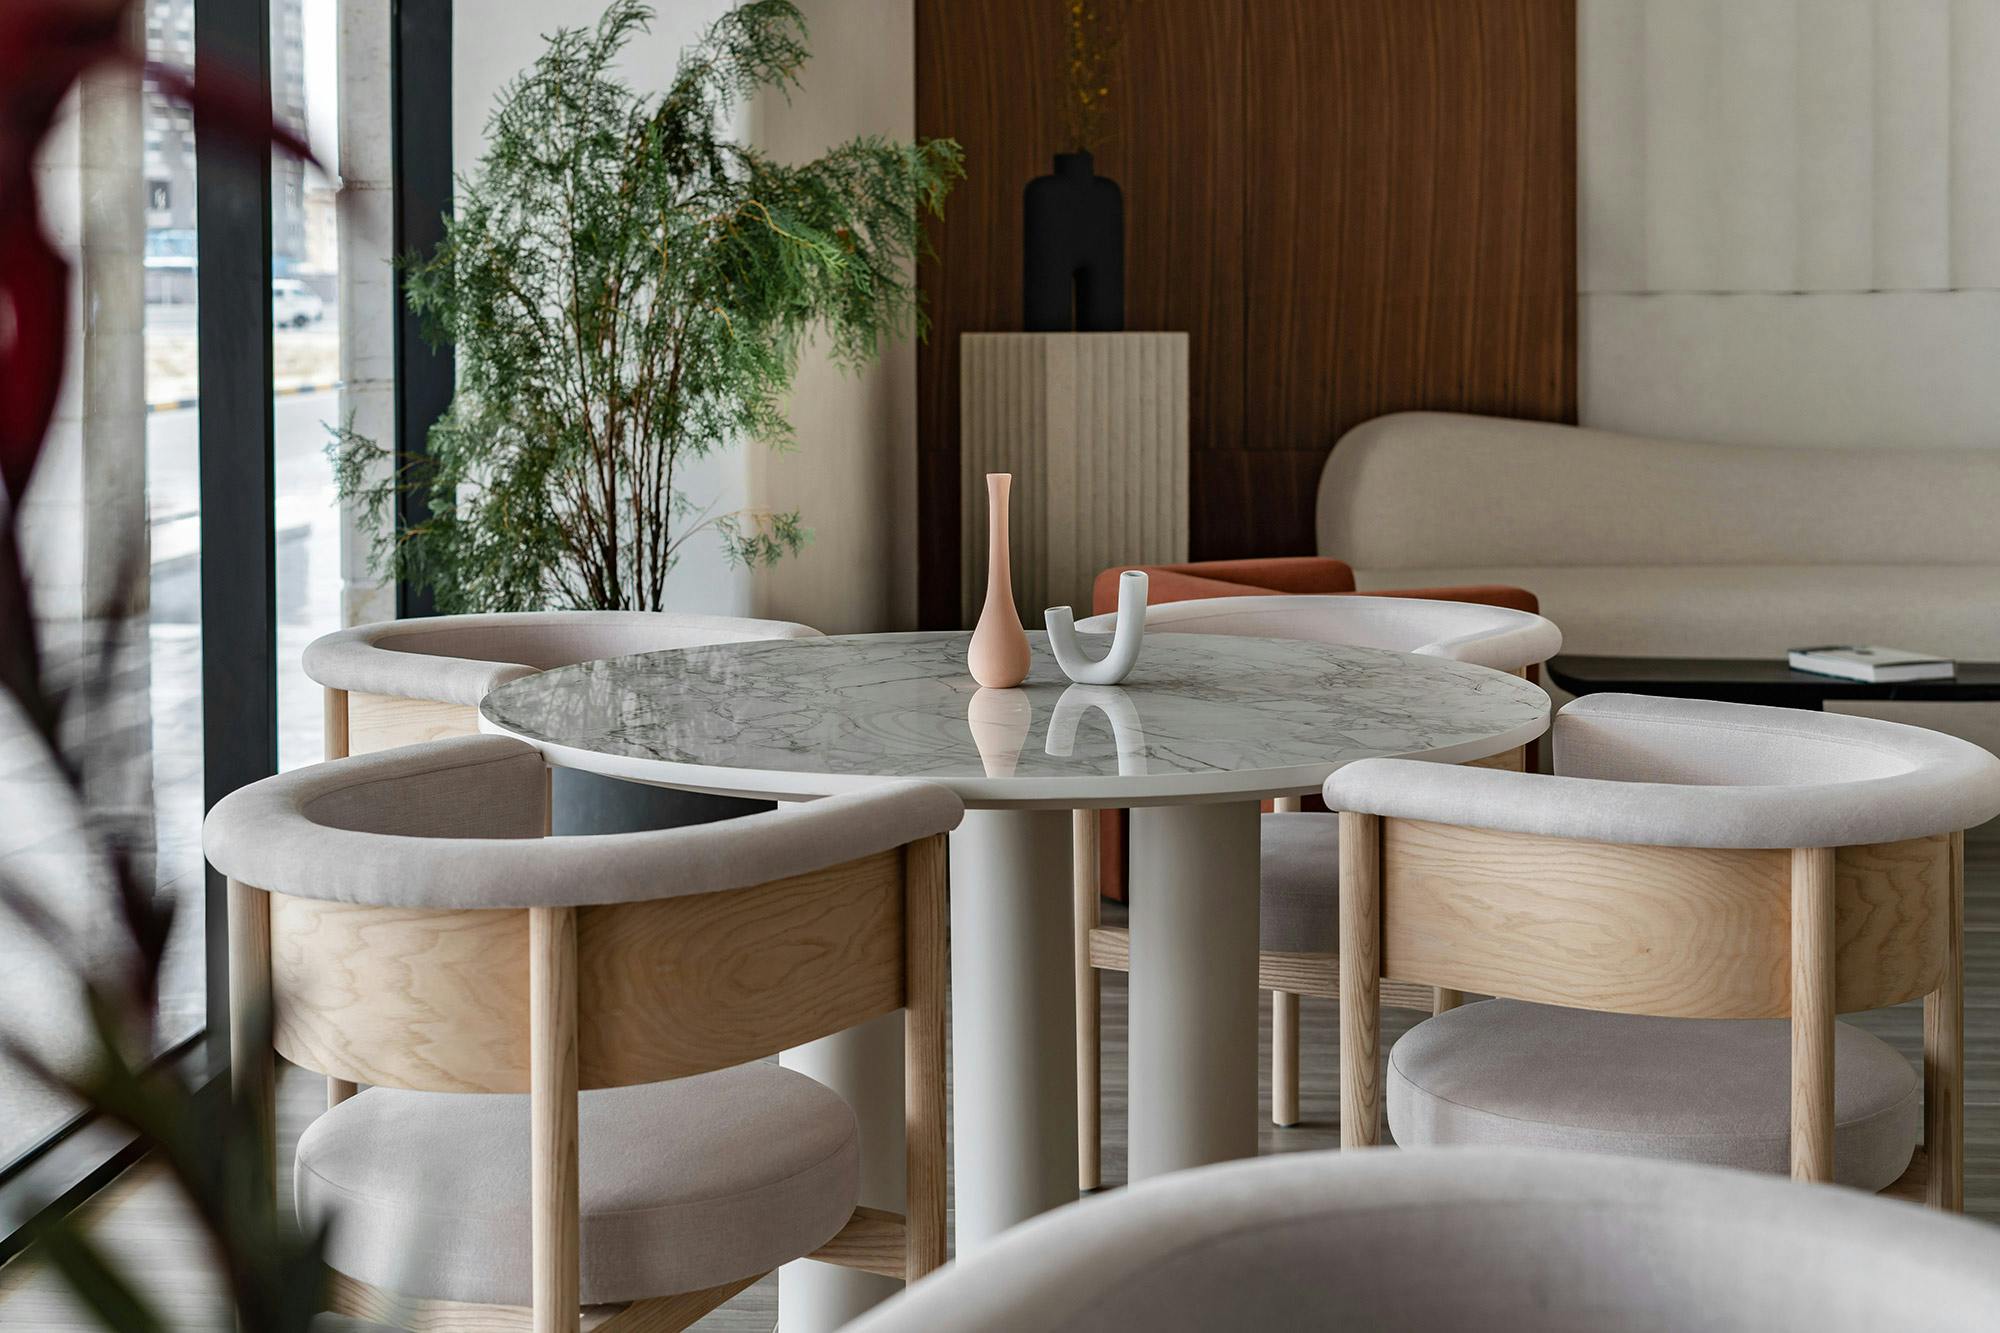 Numéro d'image 32 de la section actuelle de Tables with DKTN Bergen for coffee lovers in a cozy Emirati space de Cosentino France